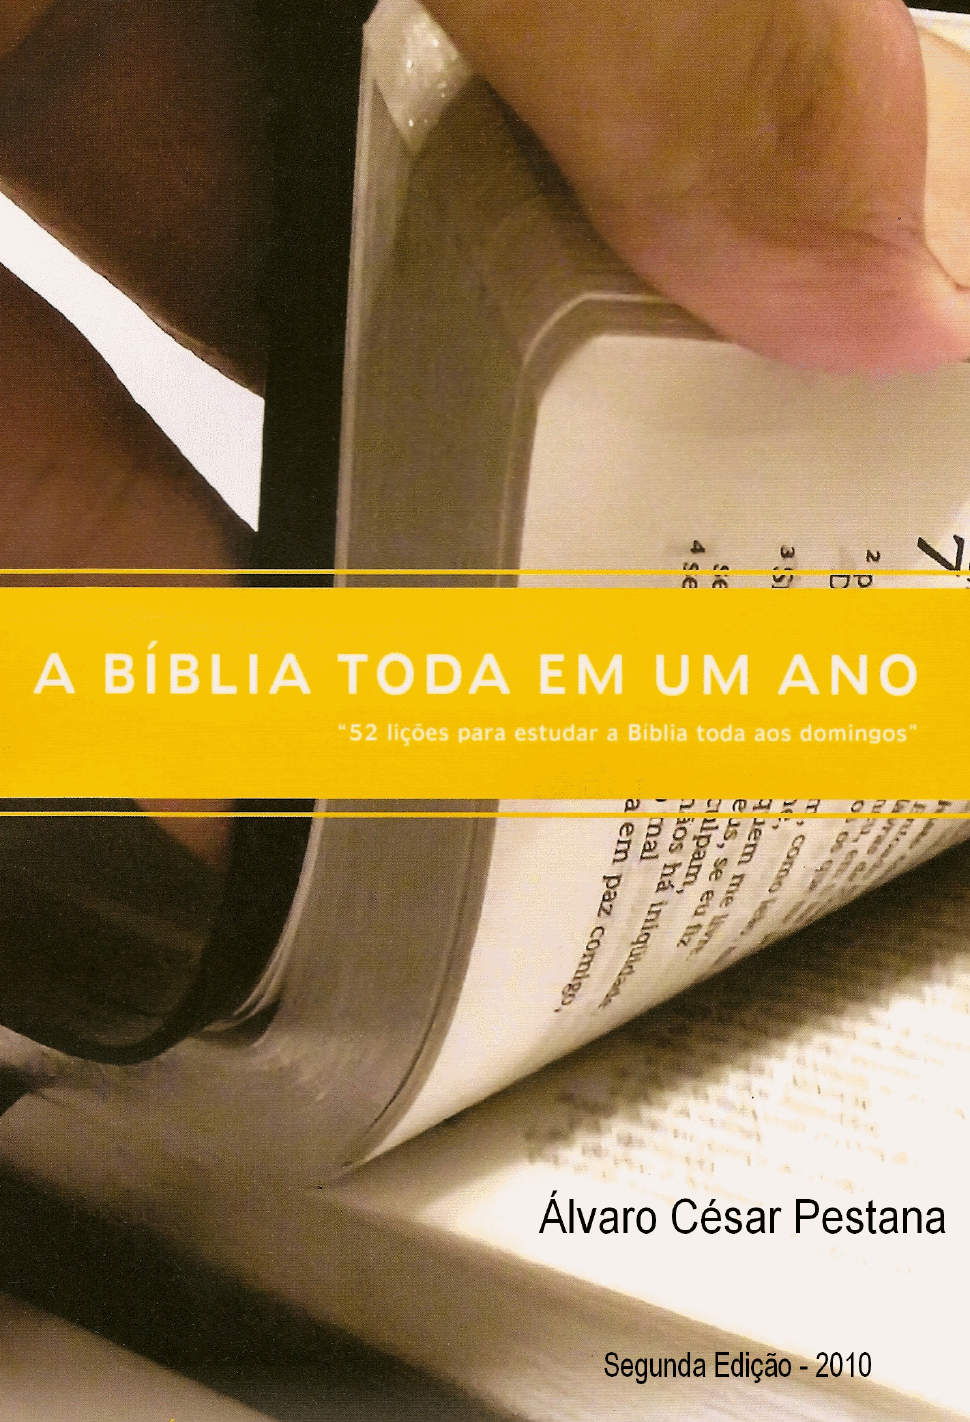 15 PERGUNTAS BÍBLICAS NÍVEL FÁCIL MÉDIO E DIFÍCIL - QUIZ BÍBLICO #2 